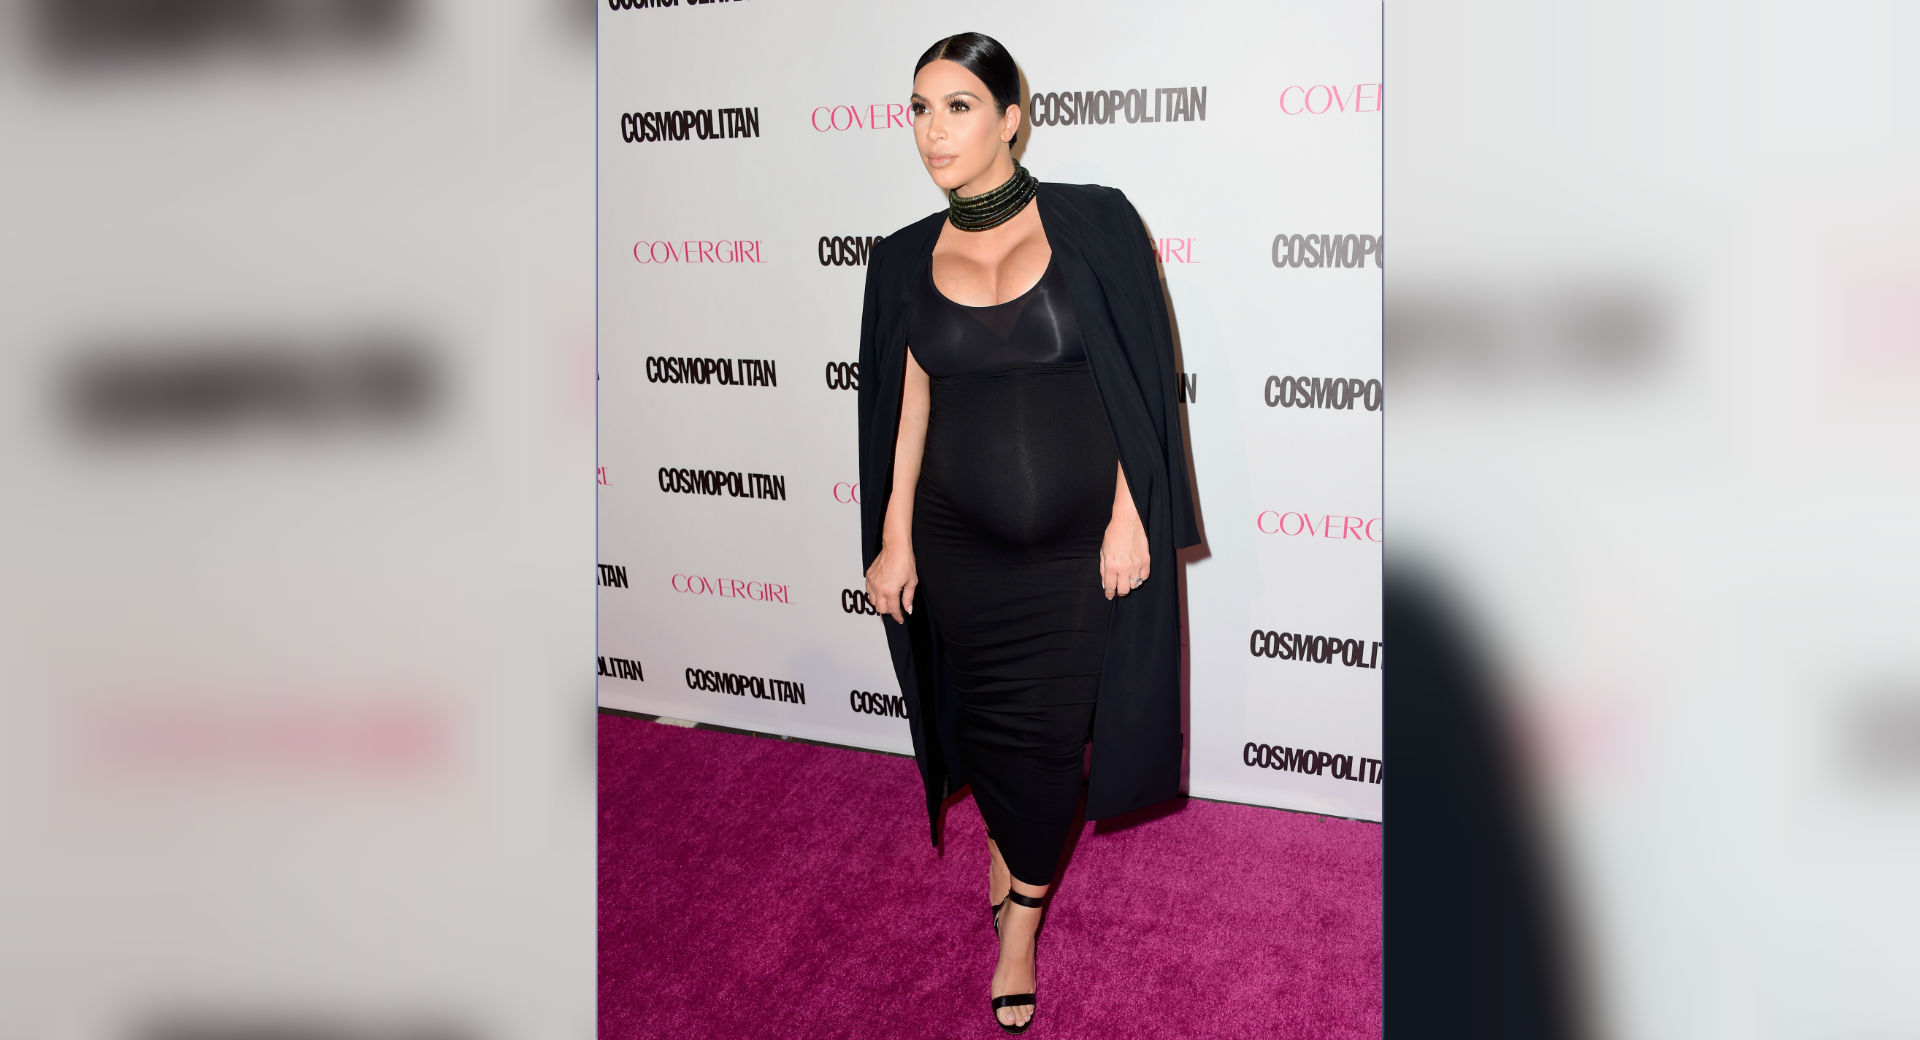 Marcado Reina alto 7 reglas para vestir con estilo según Kim Kardashian | CNN